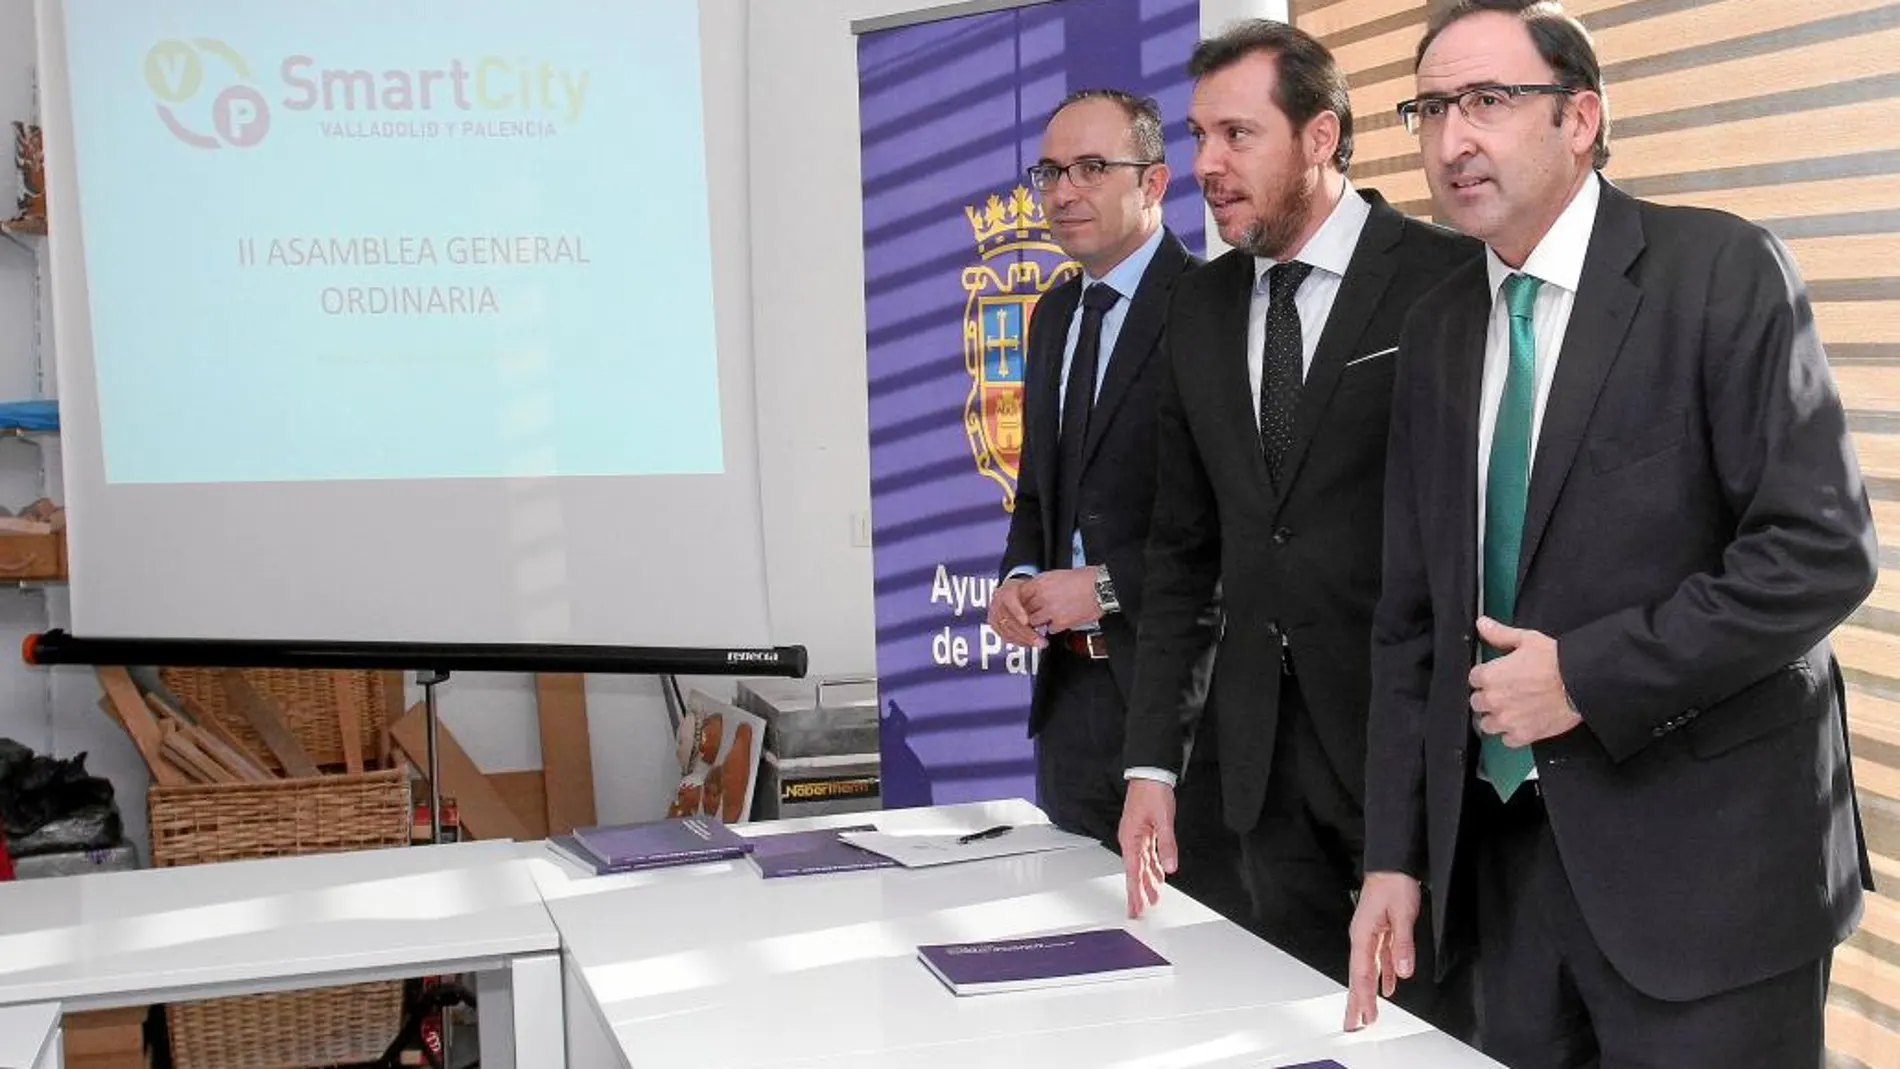 Alfonso Polanco y Óscar Puente participan en Palencia en una nueva jornada sobre la «Smart City»